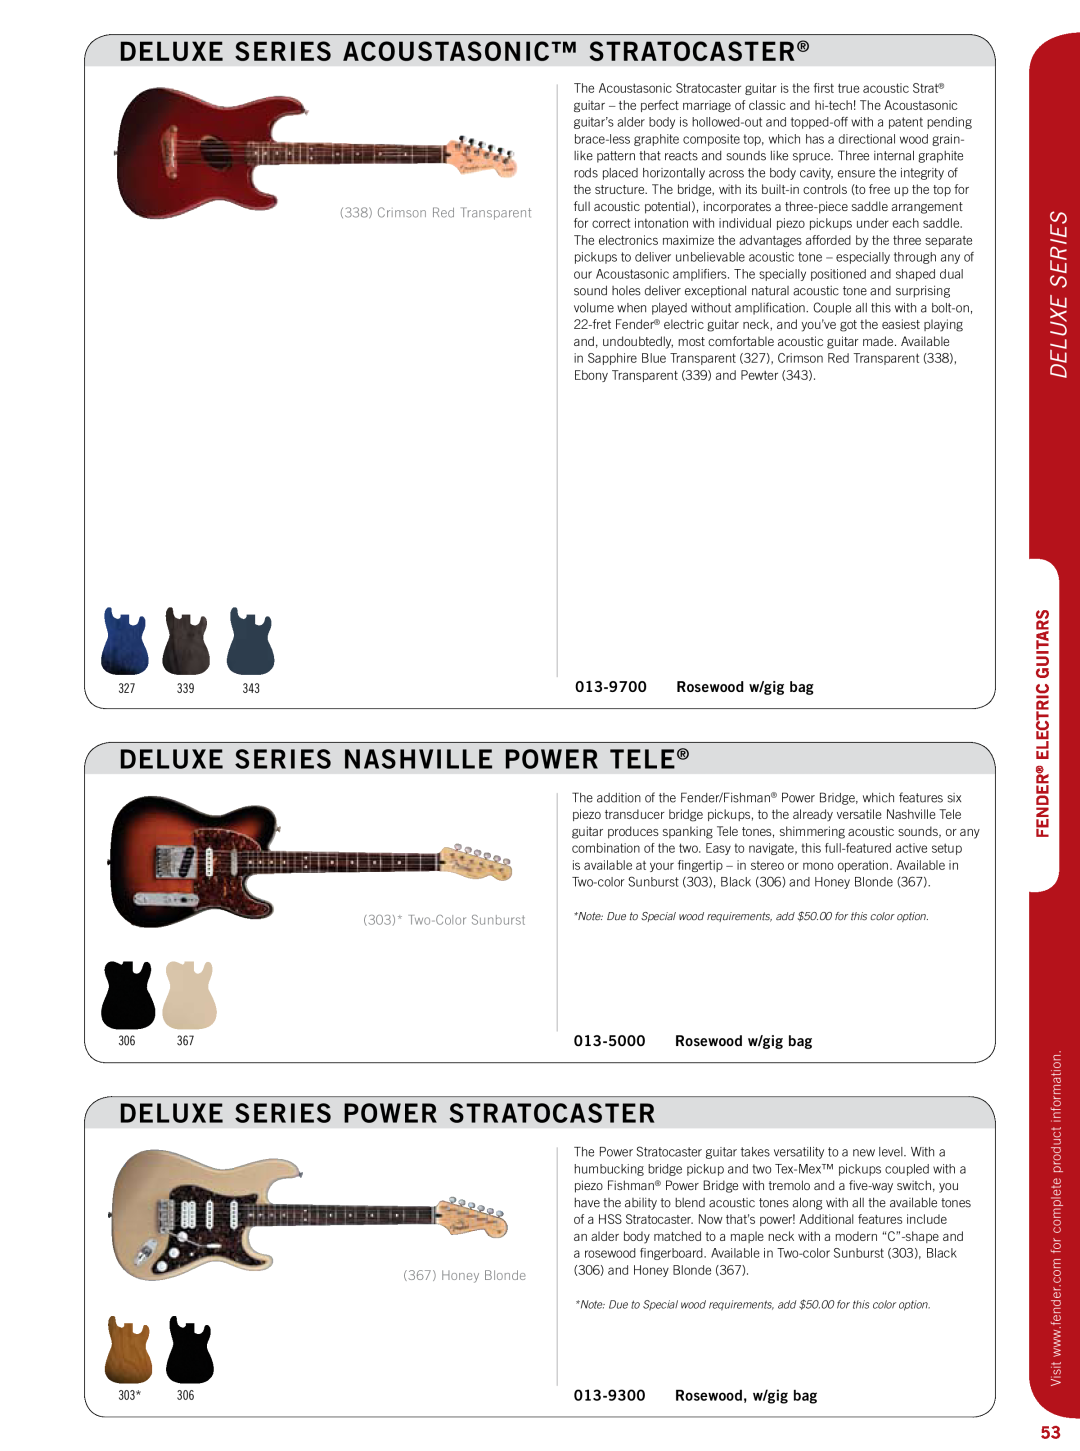 Fender 011-9700 deluxe series ACOUSTASONIC STRATOCASTER, deluxe series NASHVILLE POWER TELE, Deluxe Series, 013-9700 